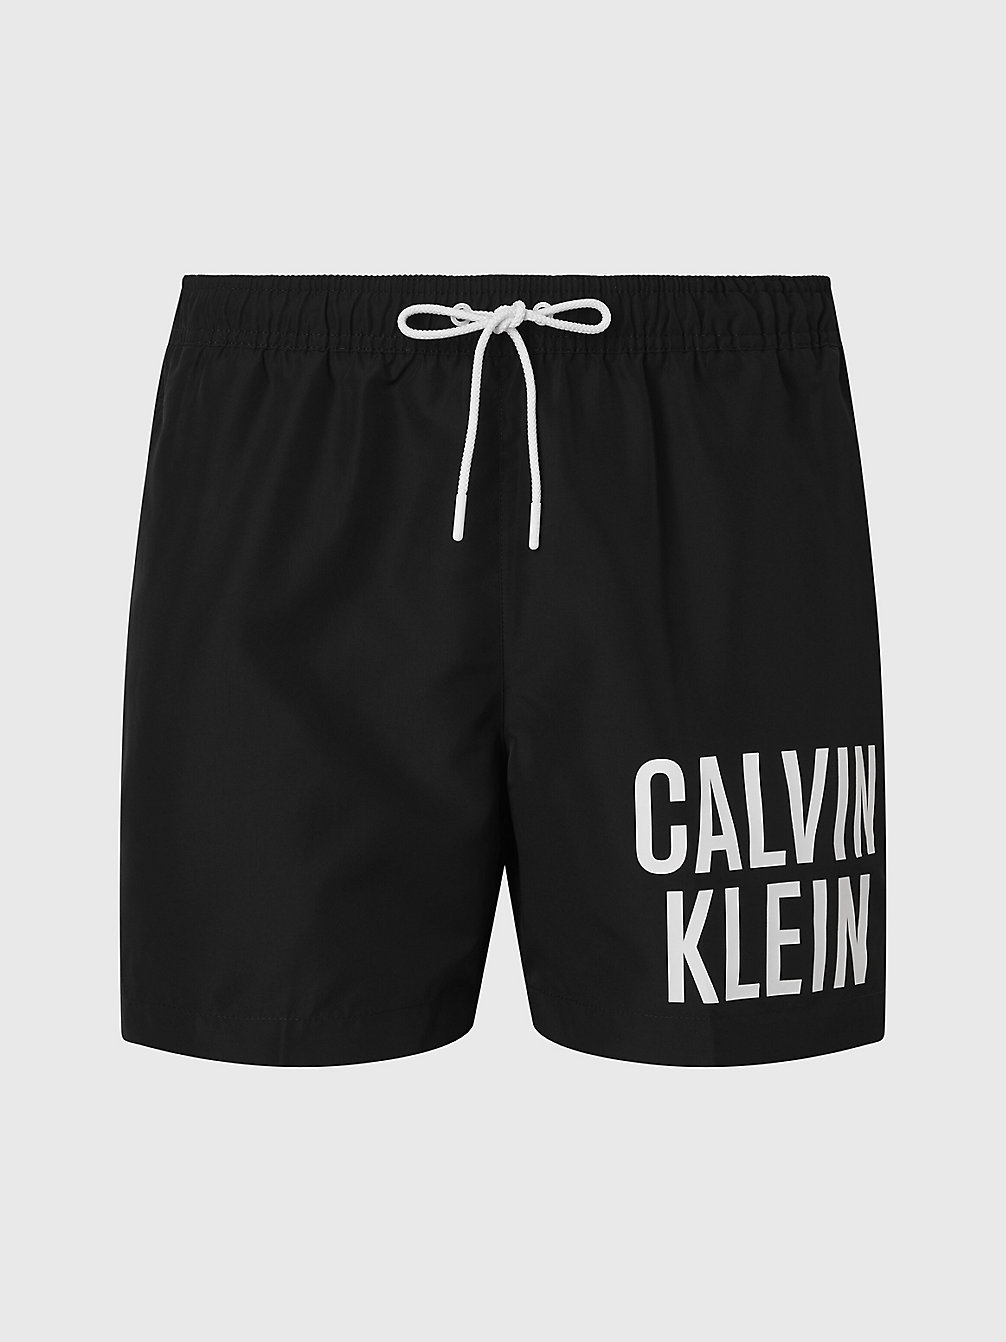 PVH BLACK > Medium Zwemshort Met Trekkoord - Intense Power > undefined heren - Calvin Klein